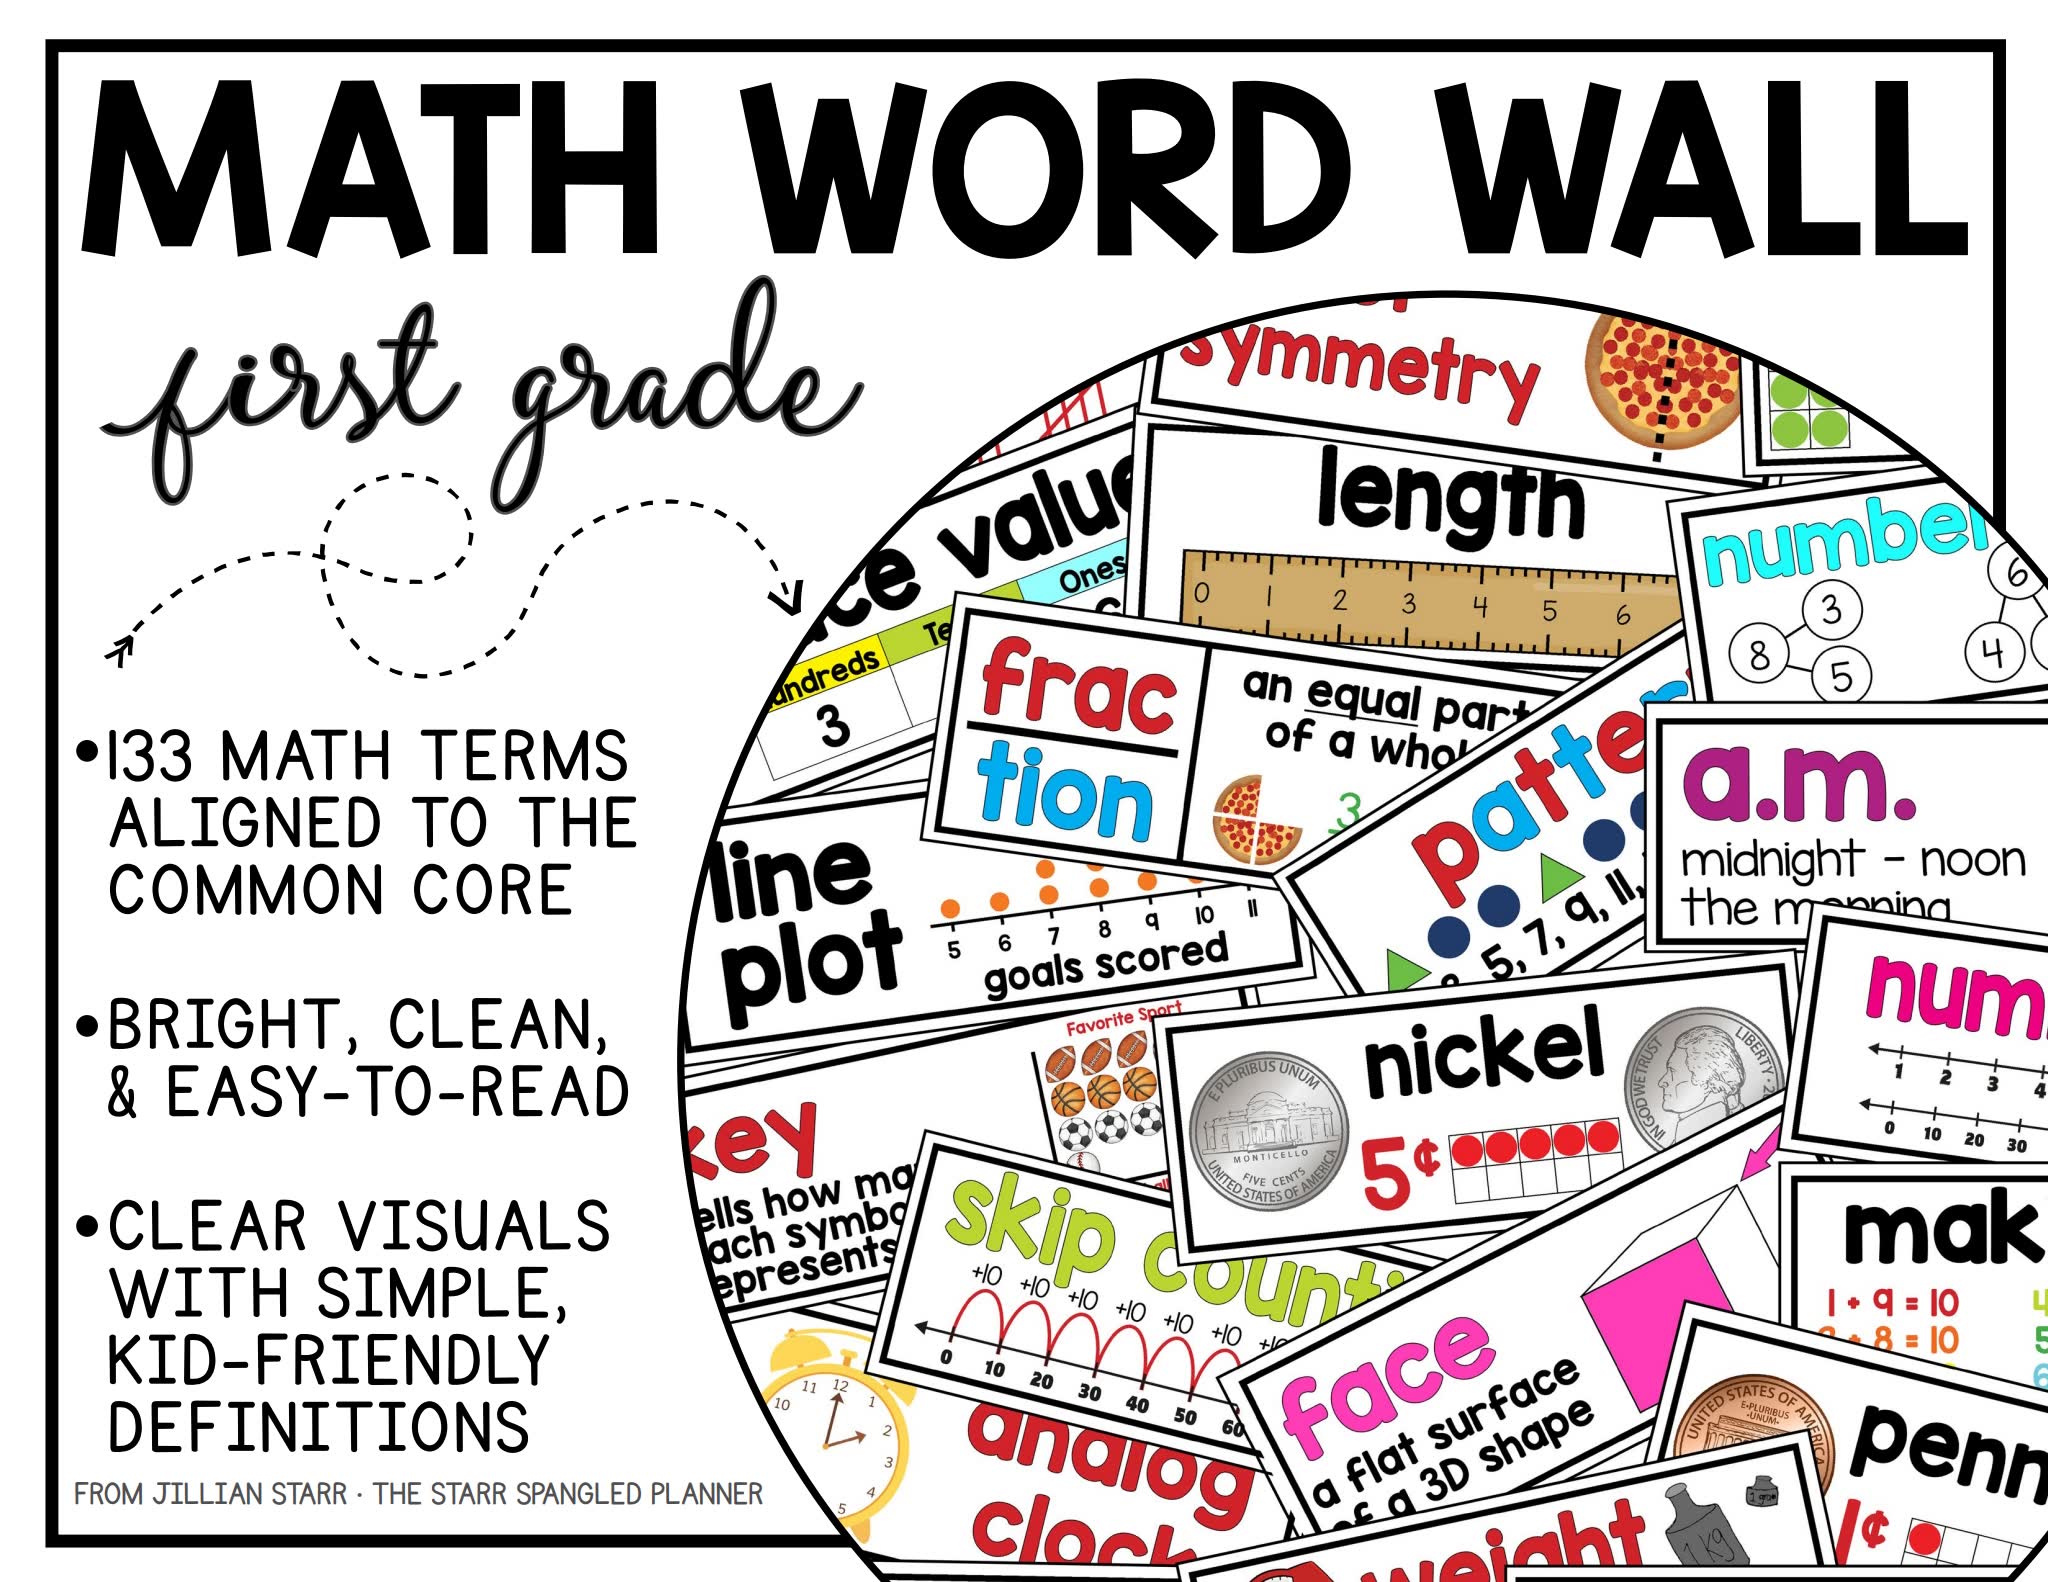 Math-Word-Wall